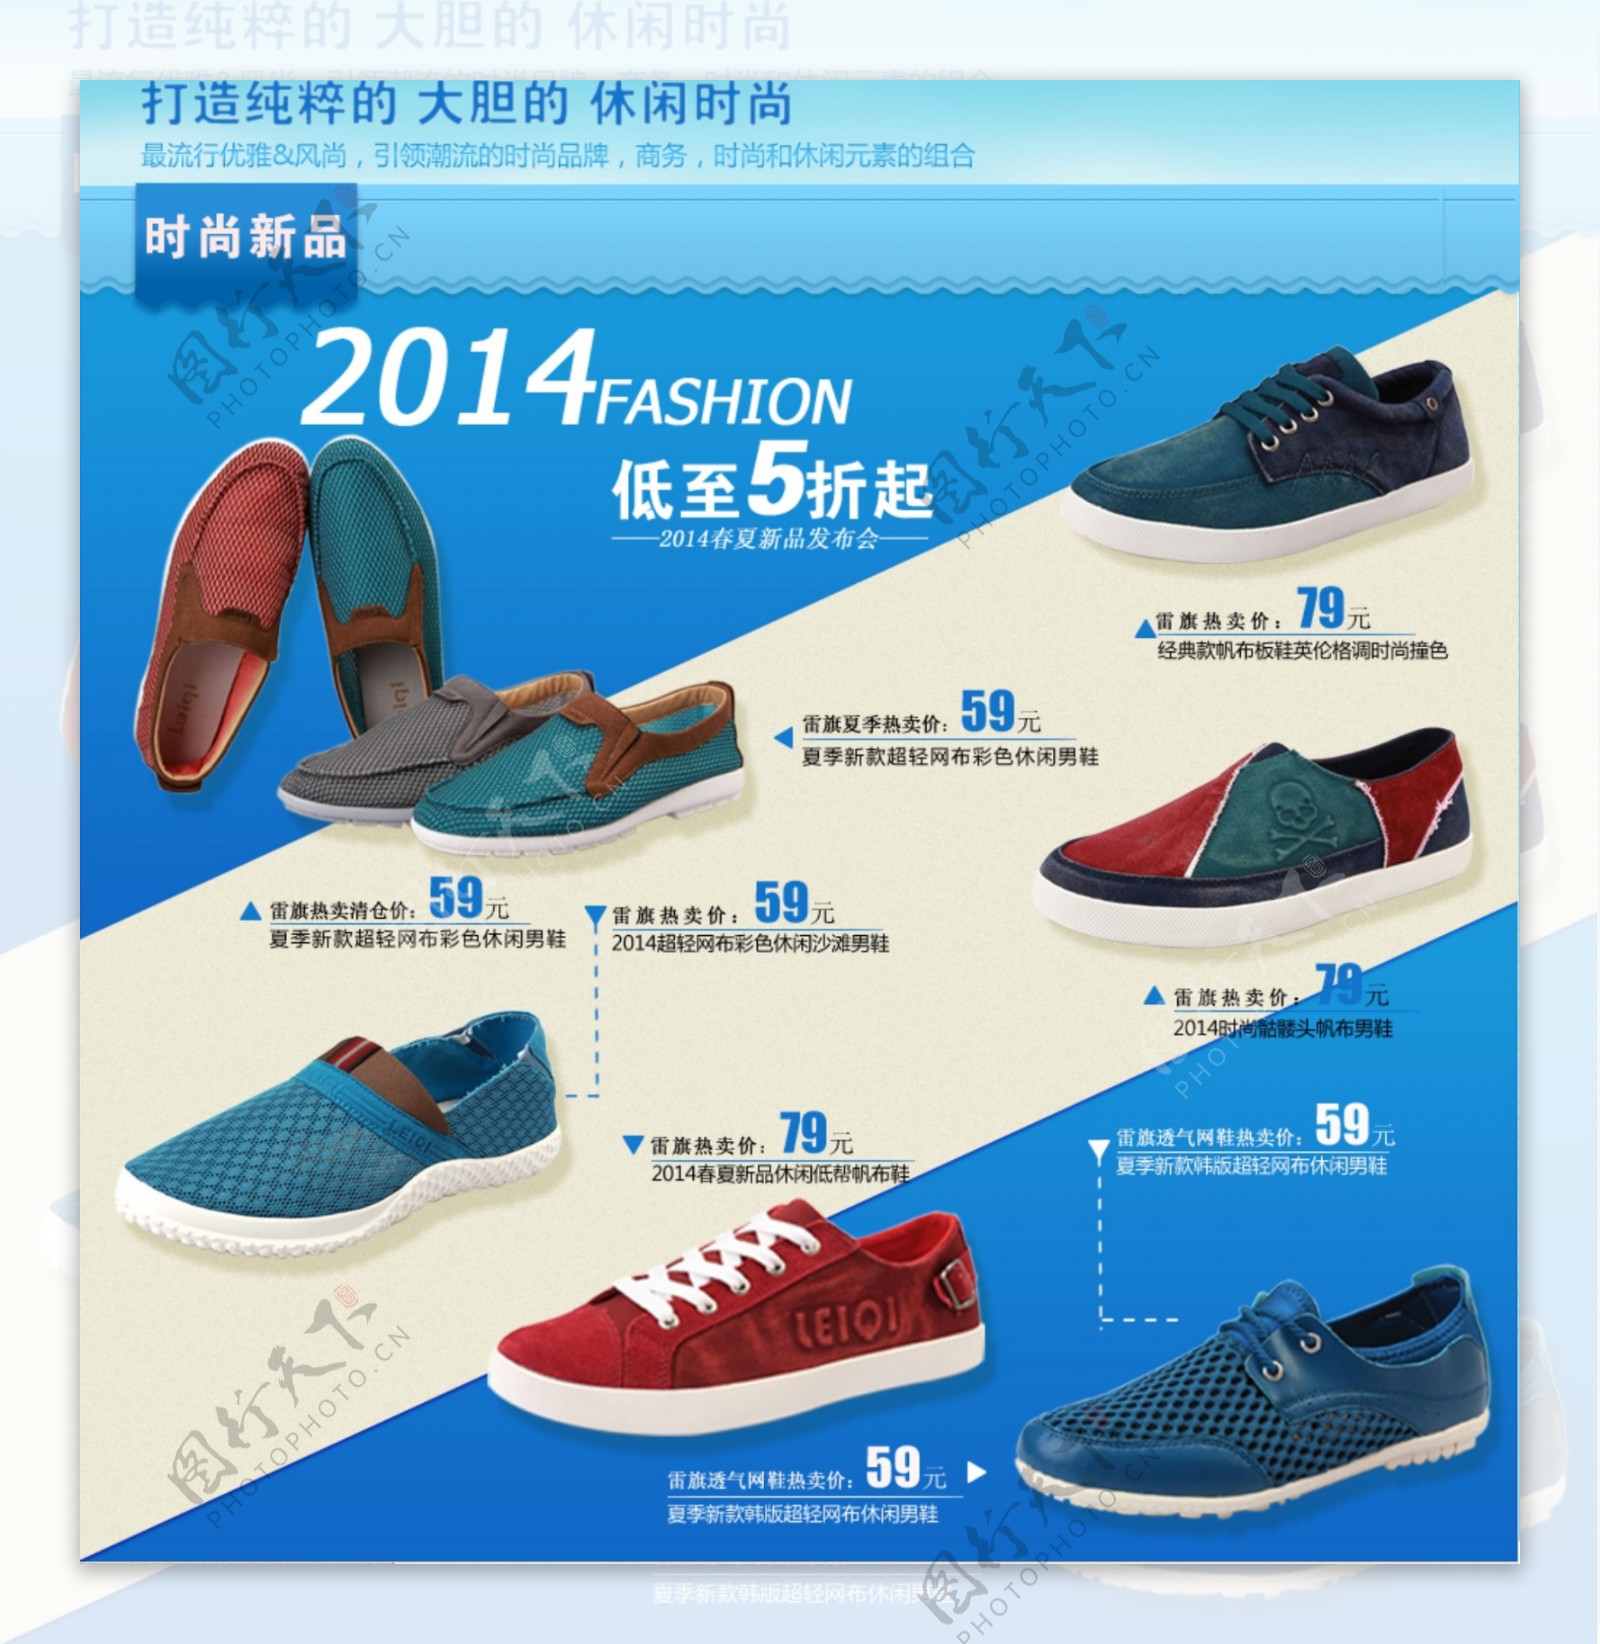 2014夏季淘宝男鞋店铺促销模板下载